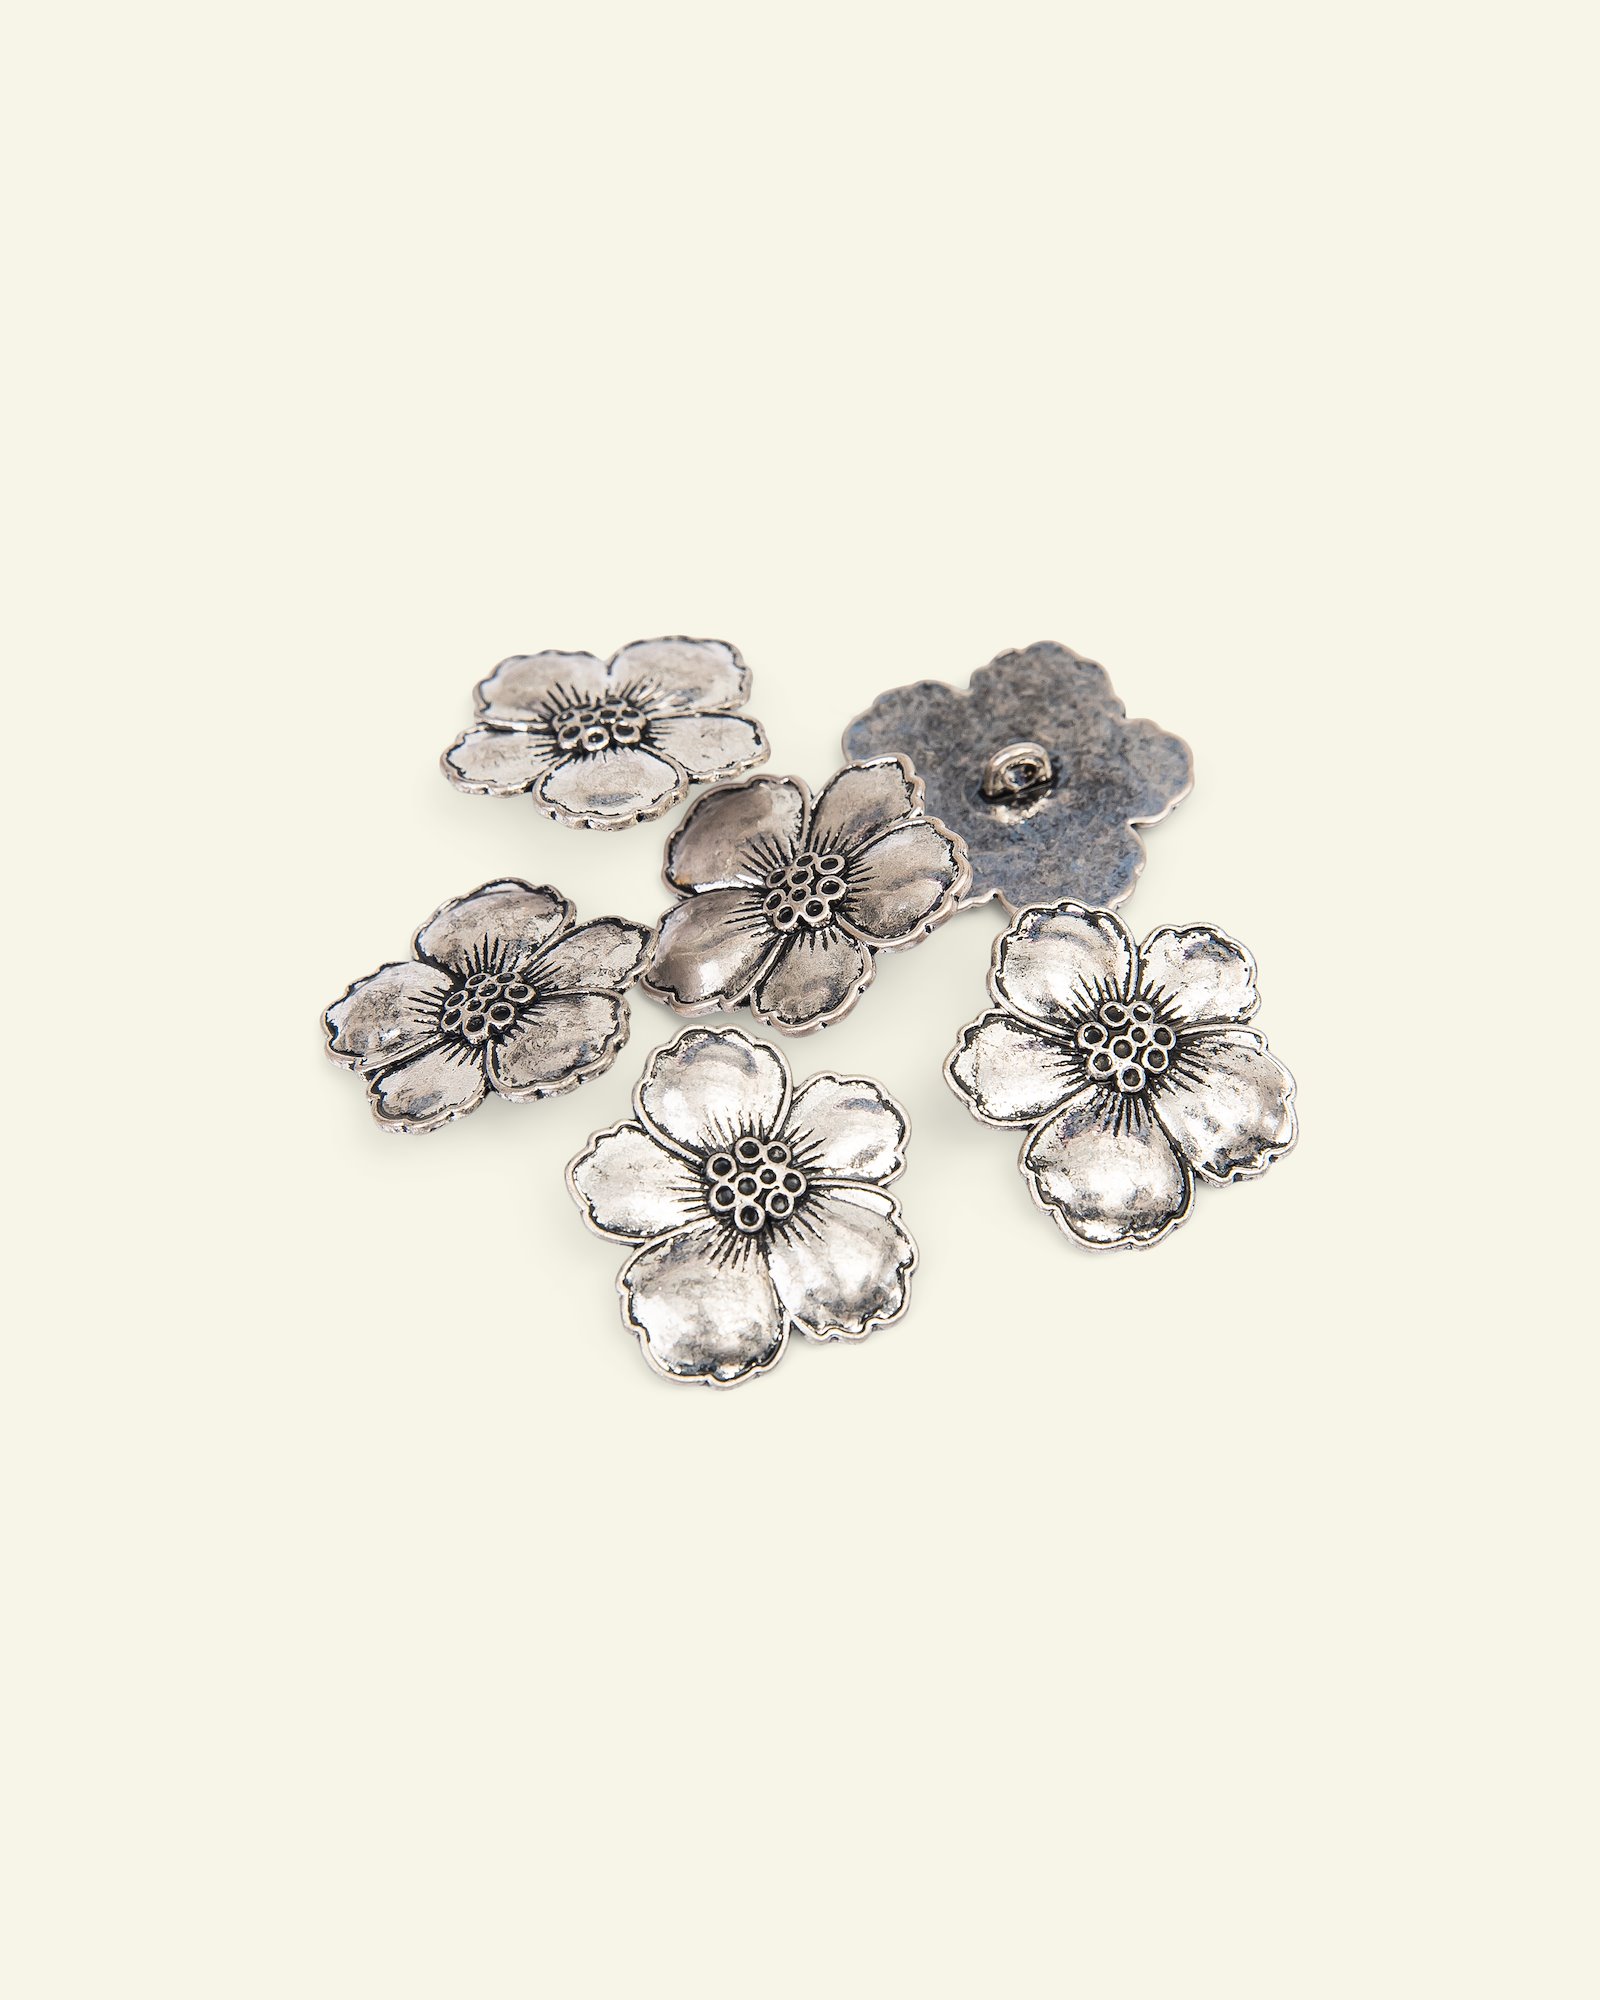 Ösenknopf Metall Blume 25mm Silber, 6St. 33585_pack